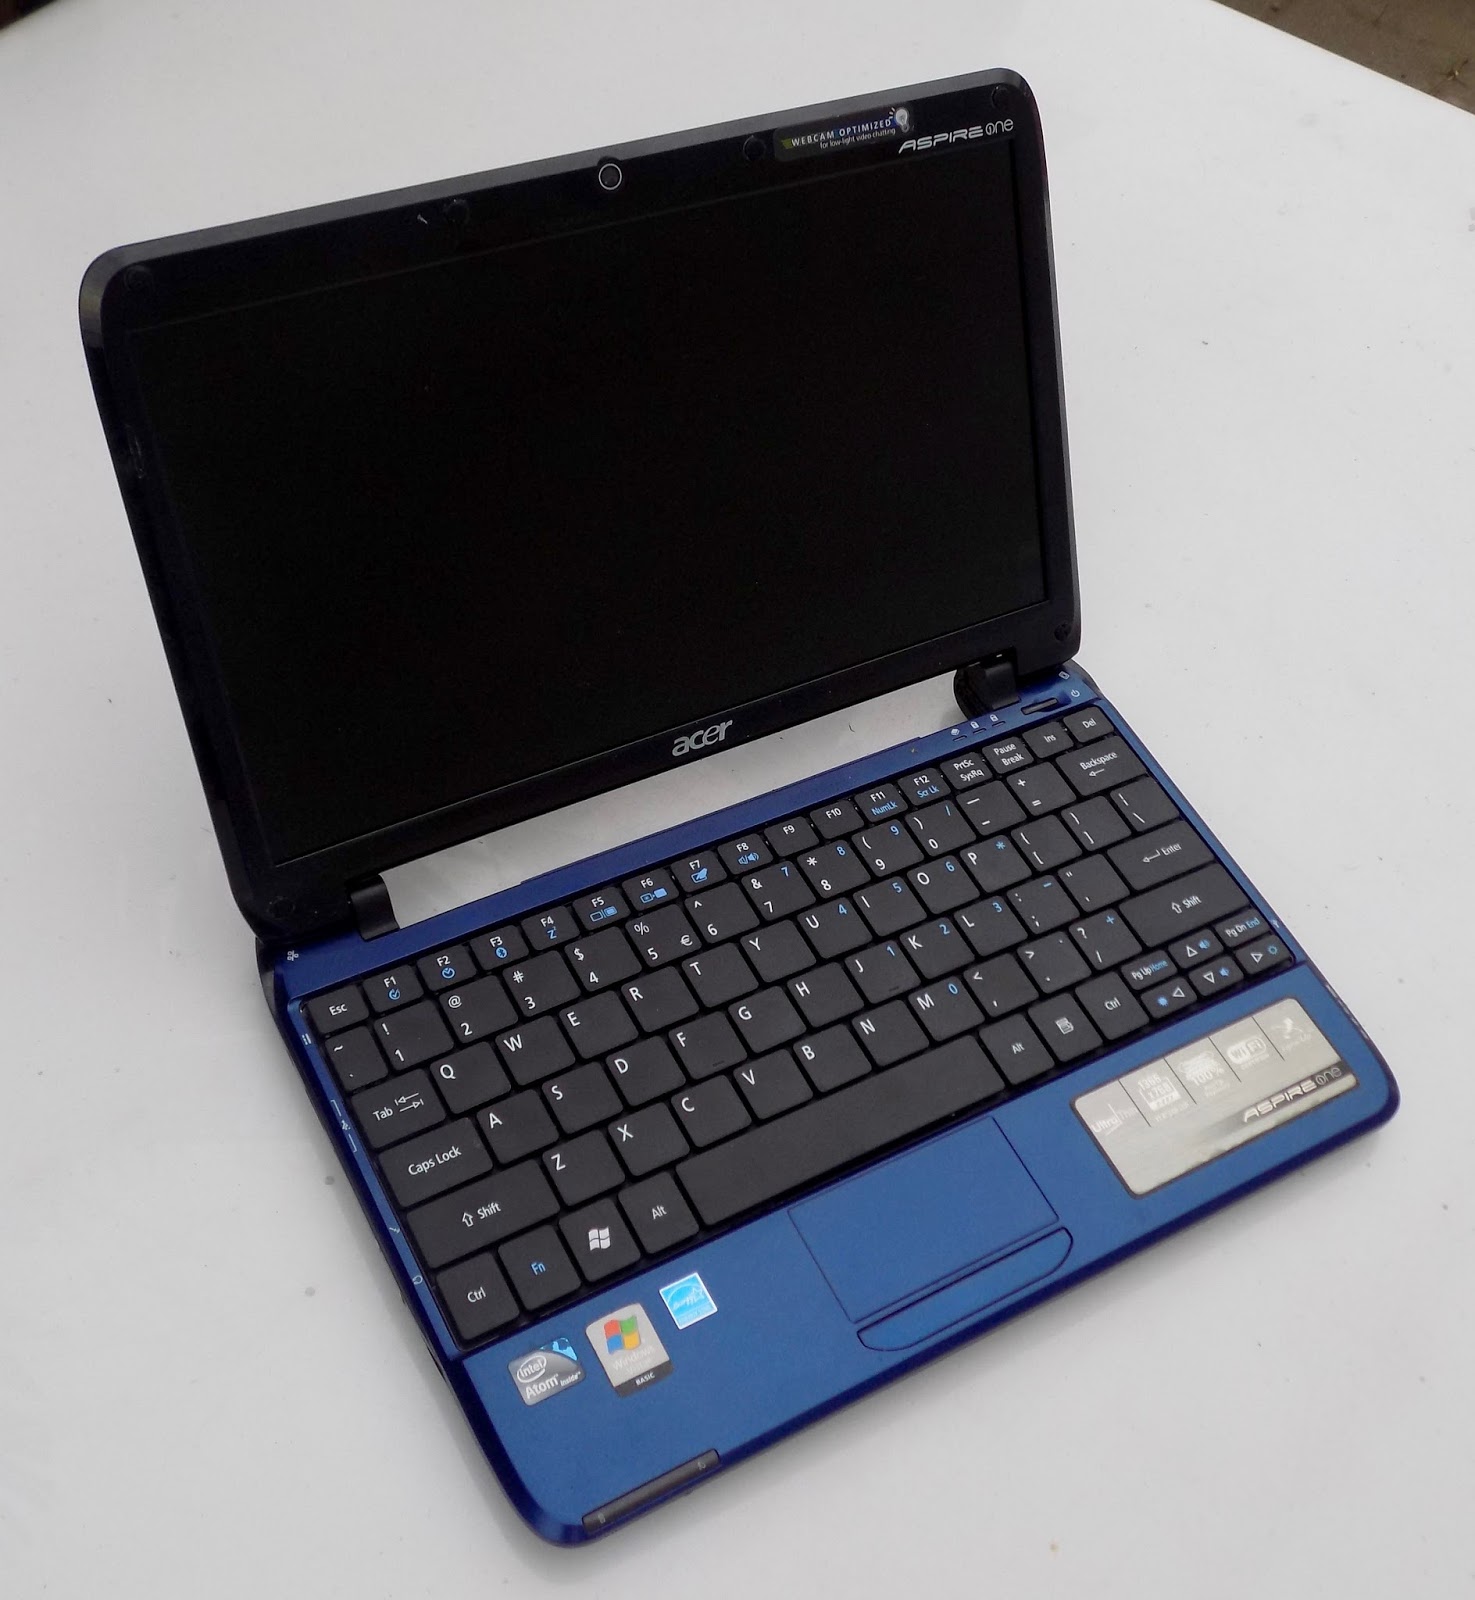 23+ Harga Notebook Acer Aspire One Bekas Booming